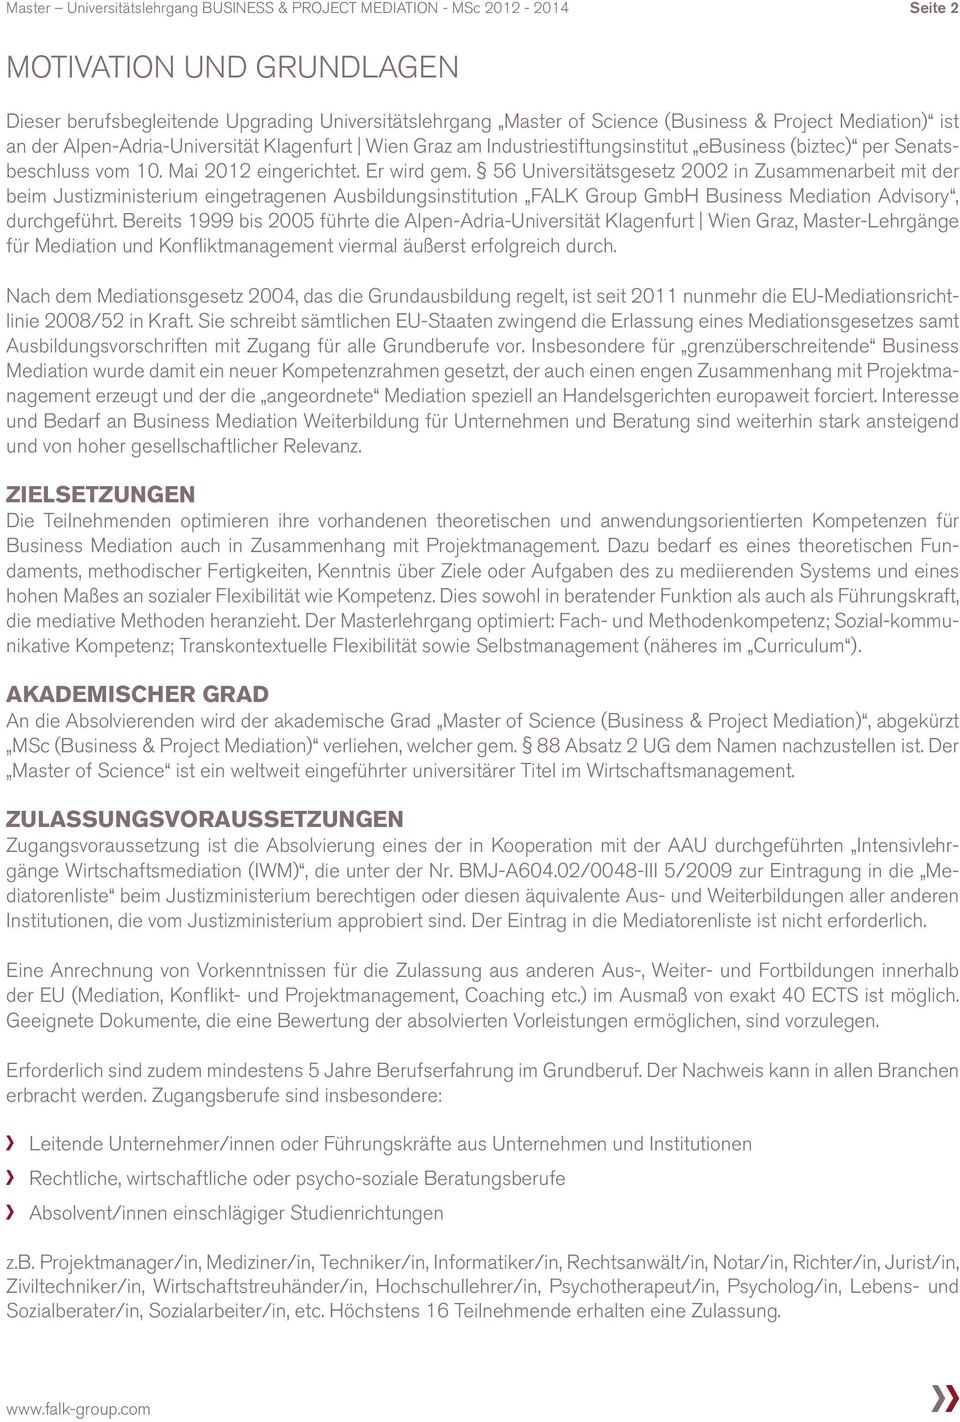 56 Universitätsgesetz 2002 in Zusammenarbeit mit der beim Justizministerium eingetragenen Ausbildungsinstitution FALK Group GmbH Business Mediation Advisory, durchgeführt.